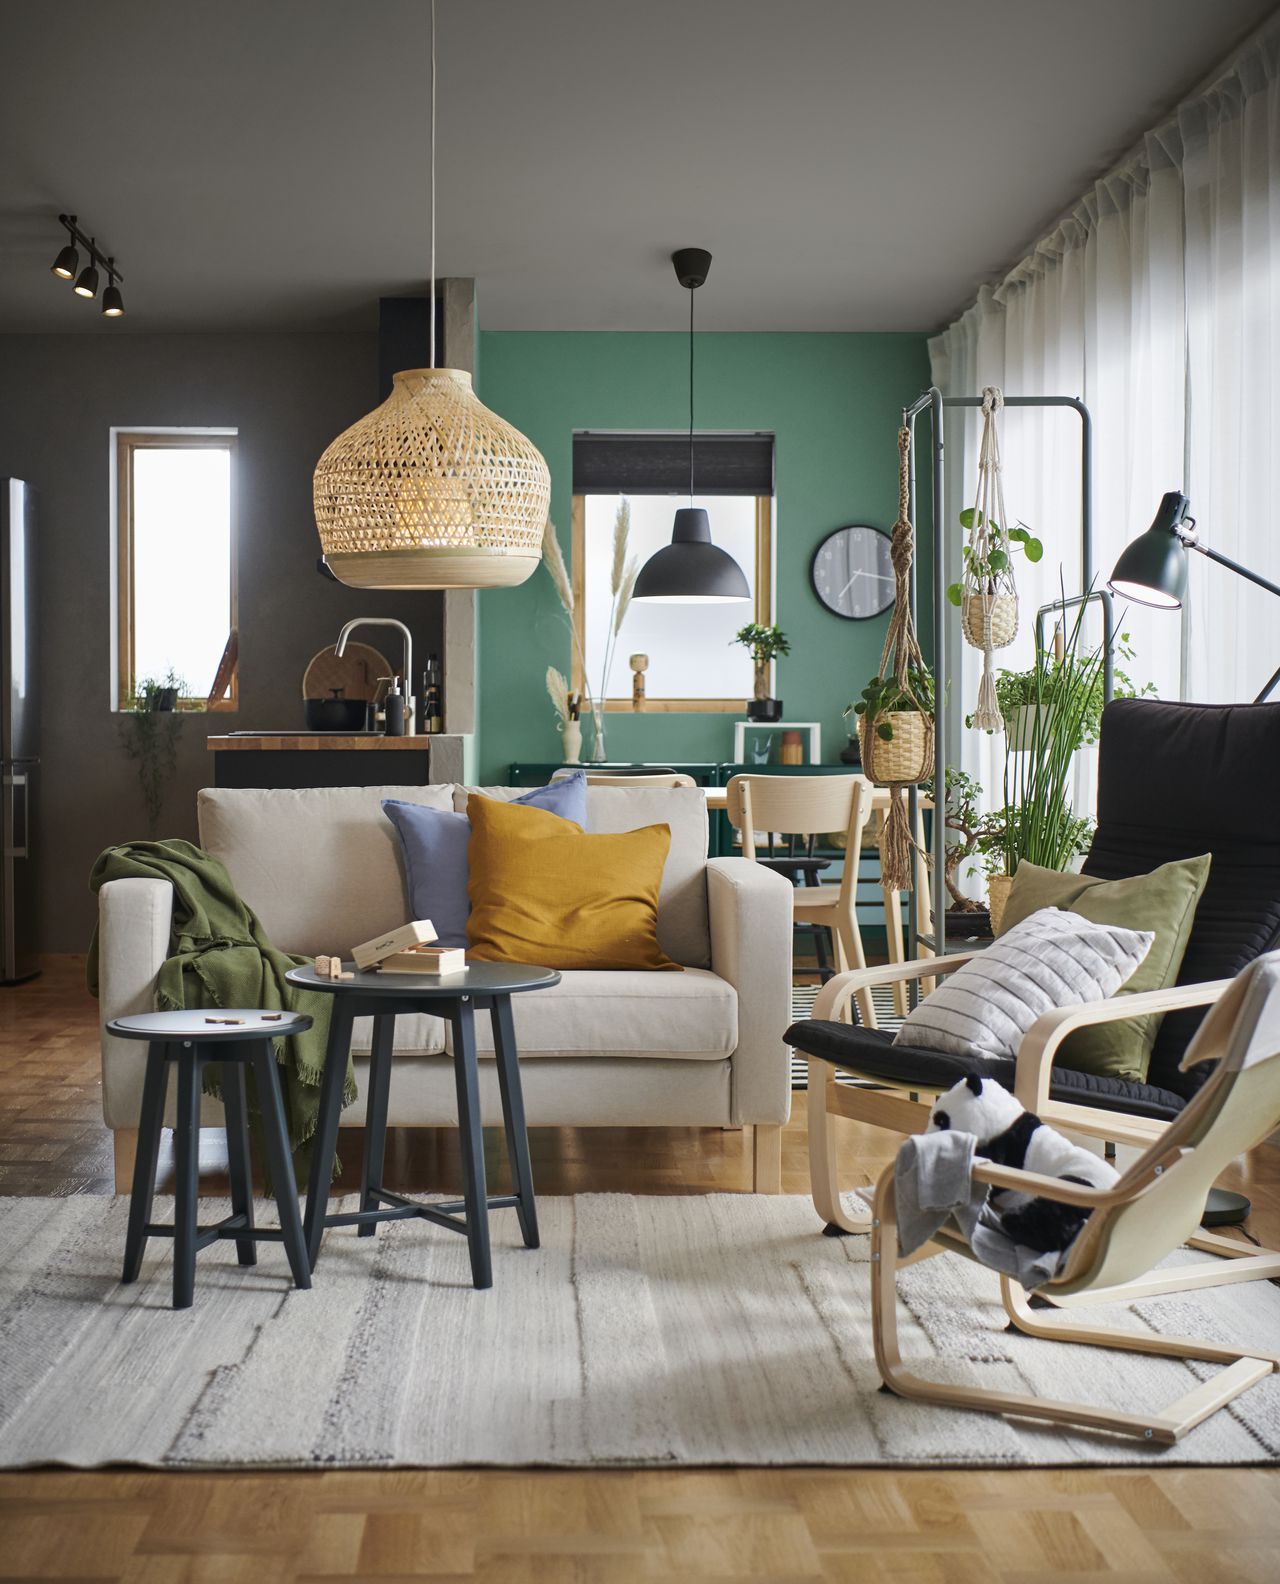 IKEA tendrá 6.000 productos en el mercado colombiano, del segmento de muebles y del de decoración para el hogar.